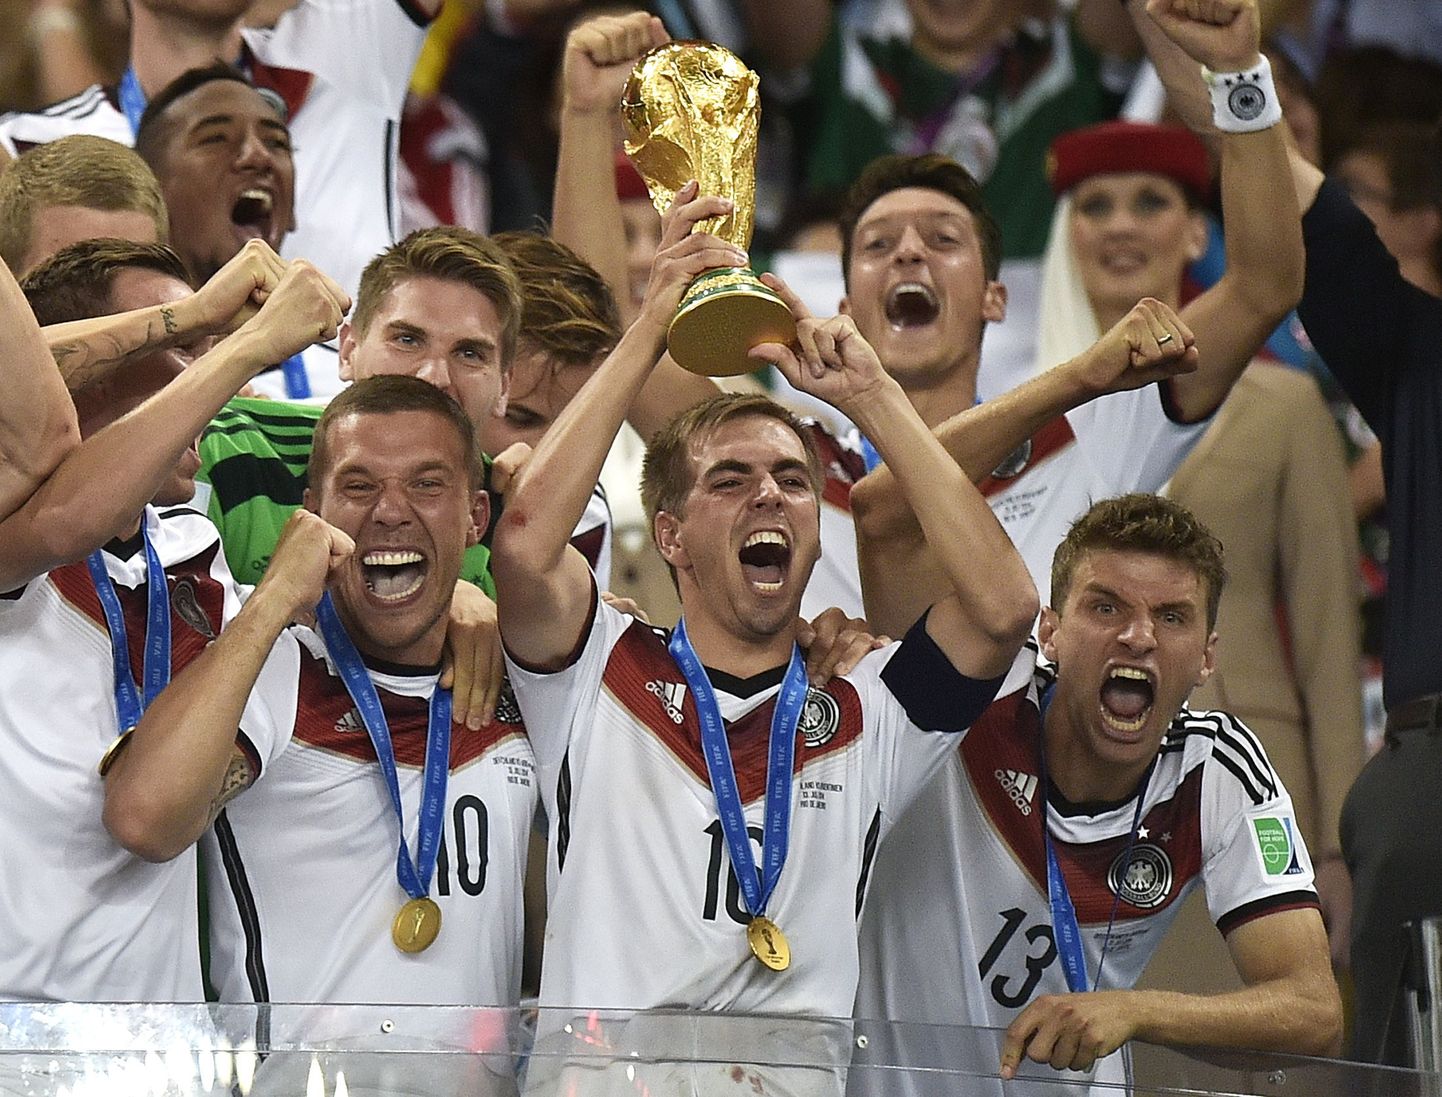 Saksamaa jalgpallikoondise liikmed tähistamas eelmisel aastal MM-tiitli võitmist.